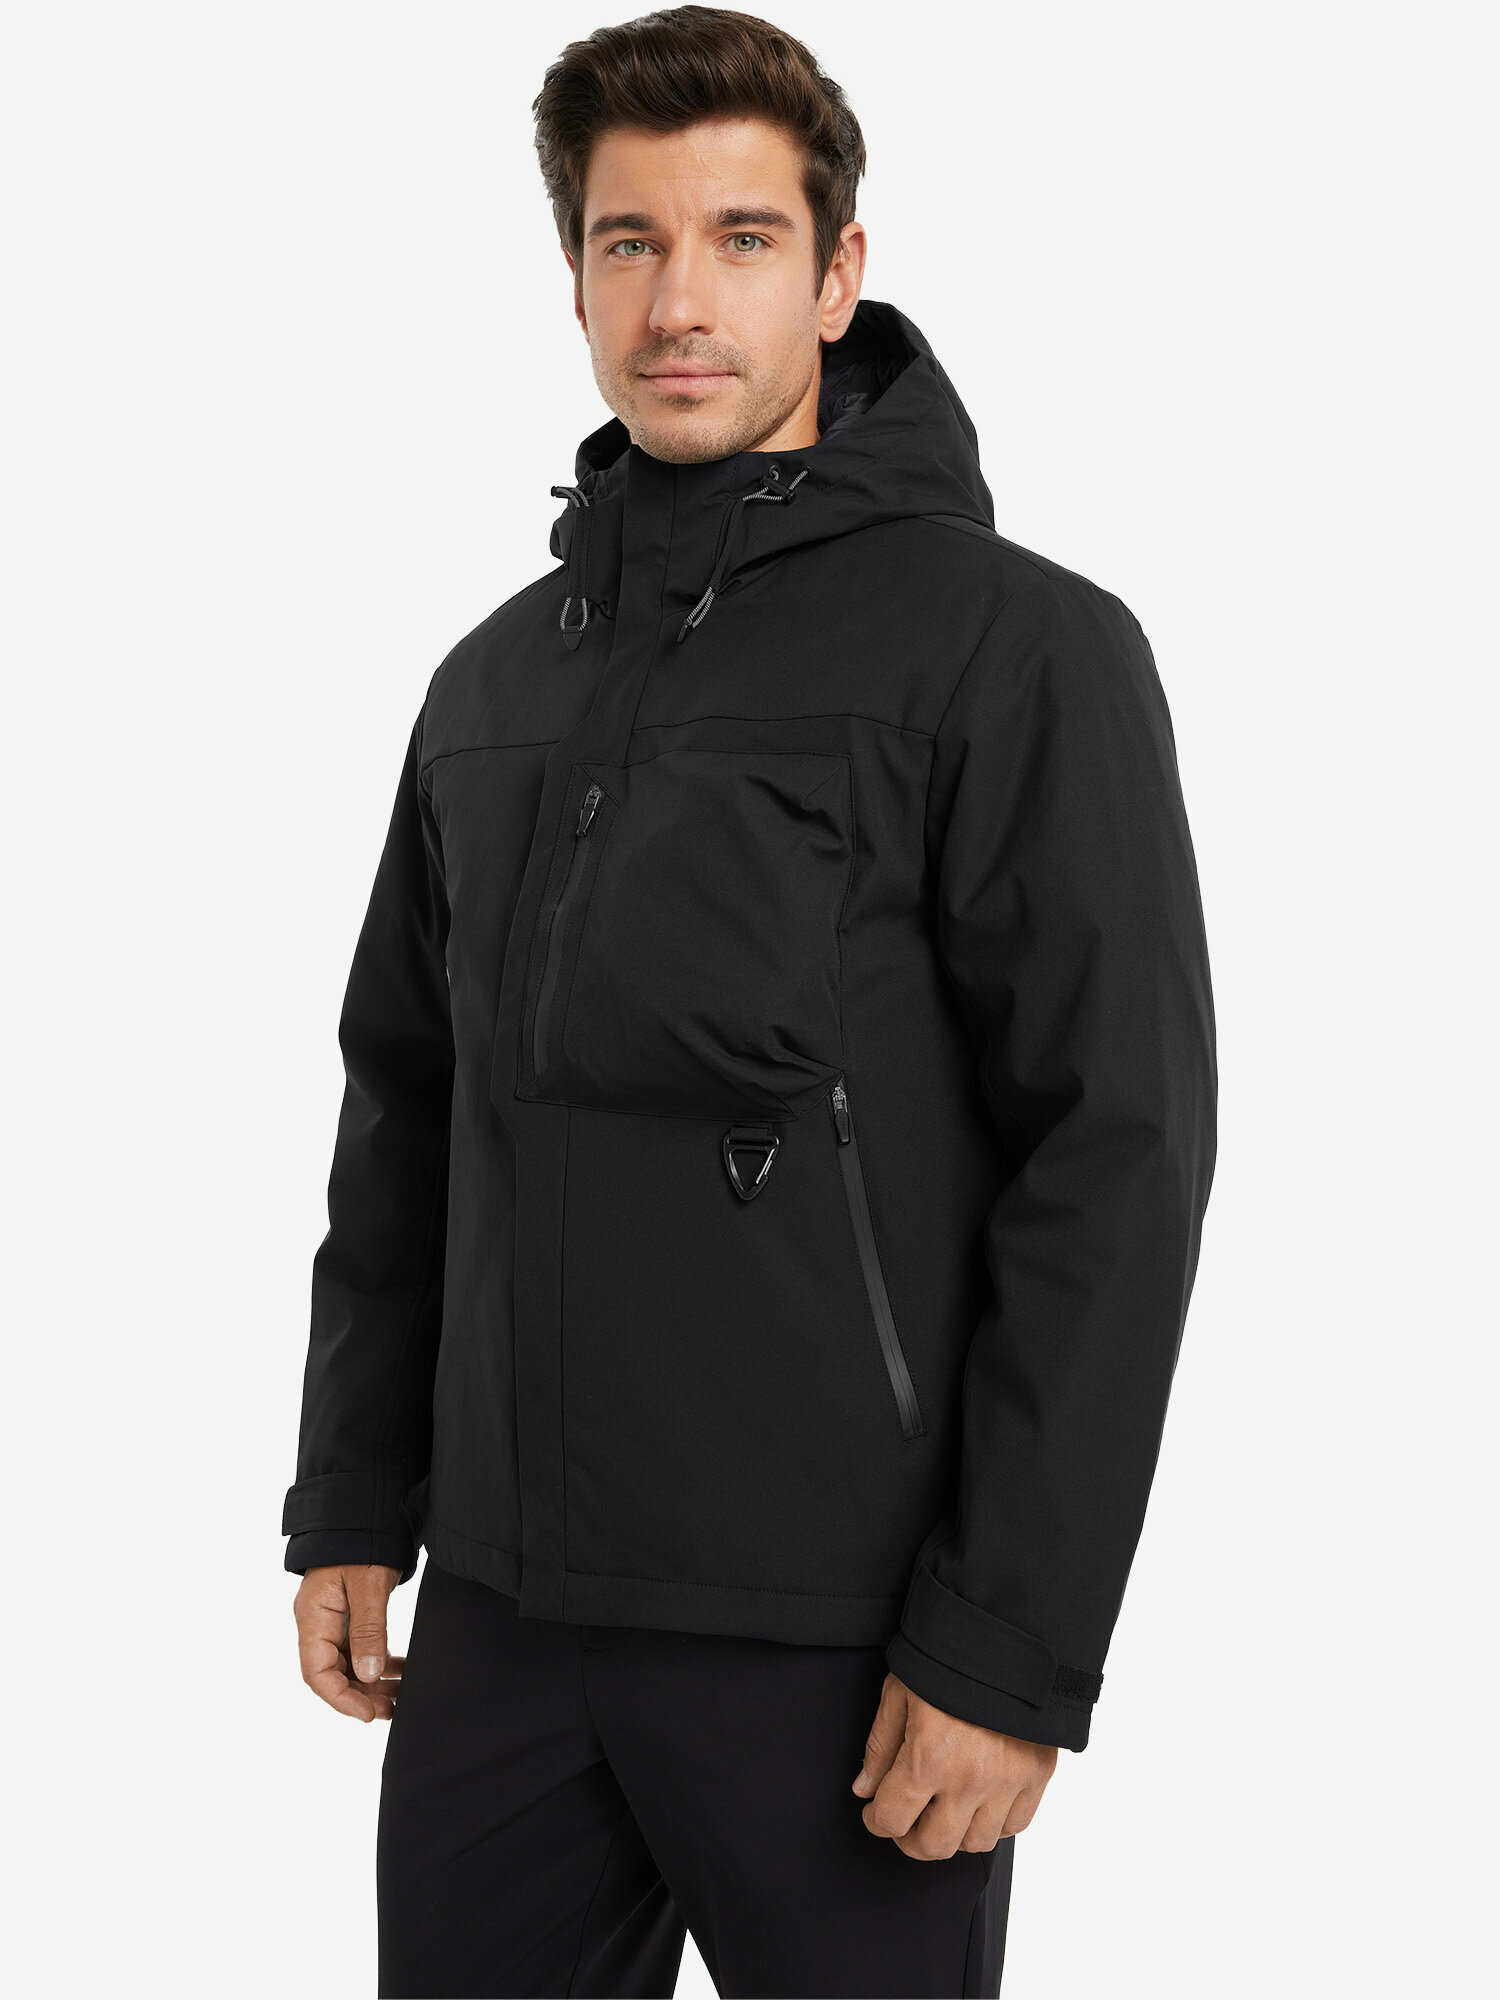 Куртка TOREAD Men's cotton-padded jacket